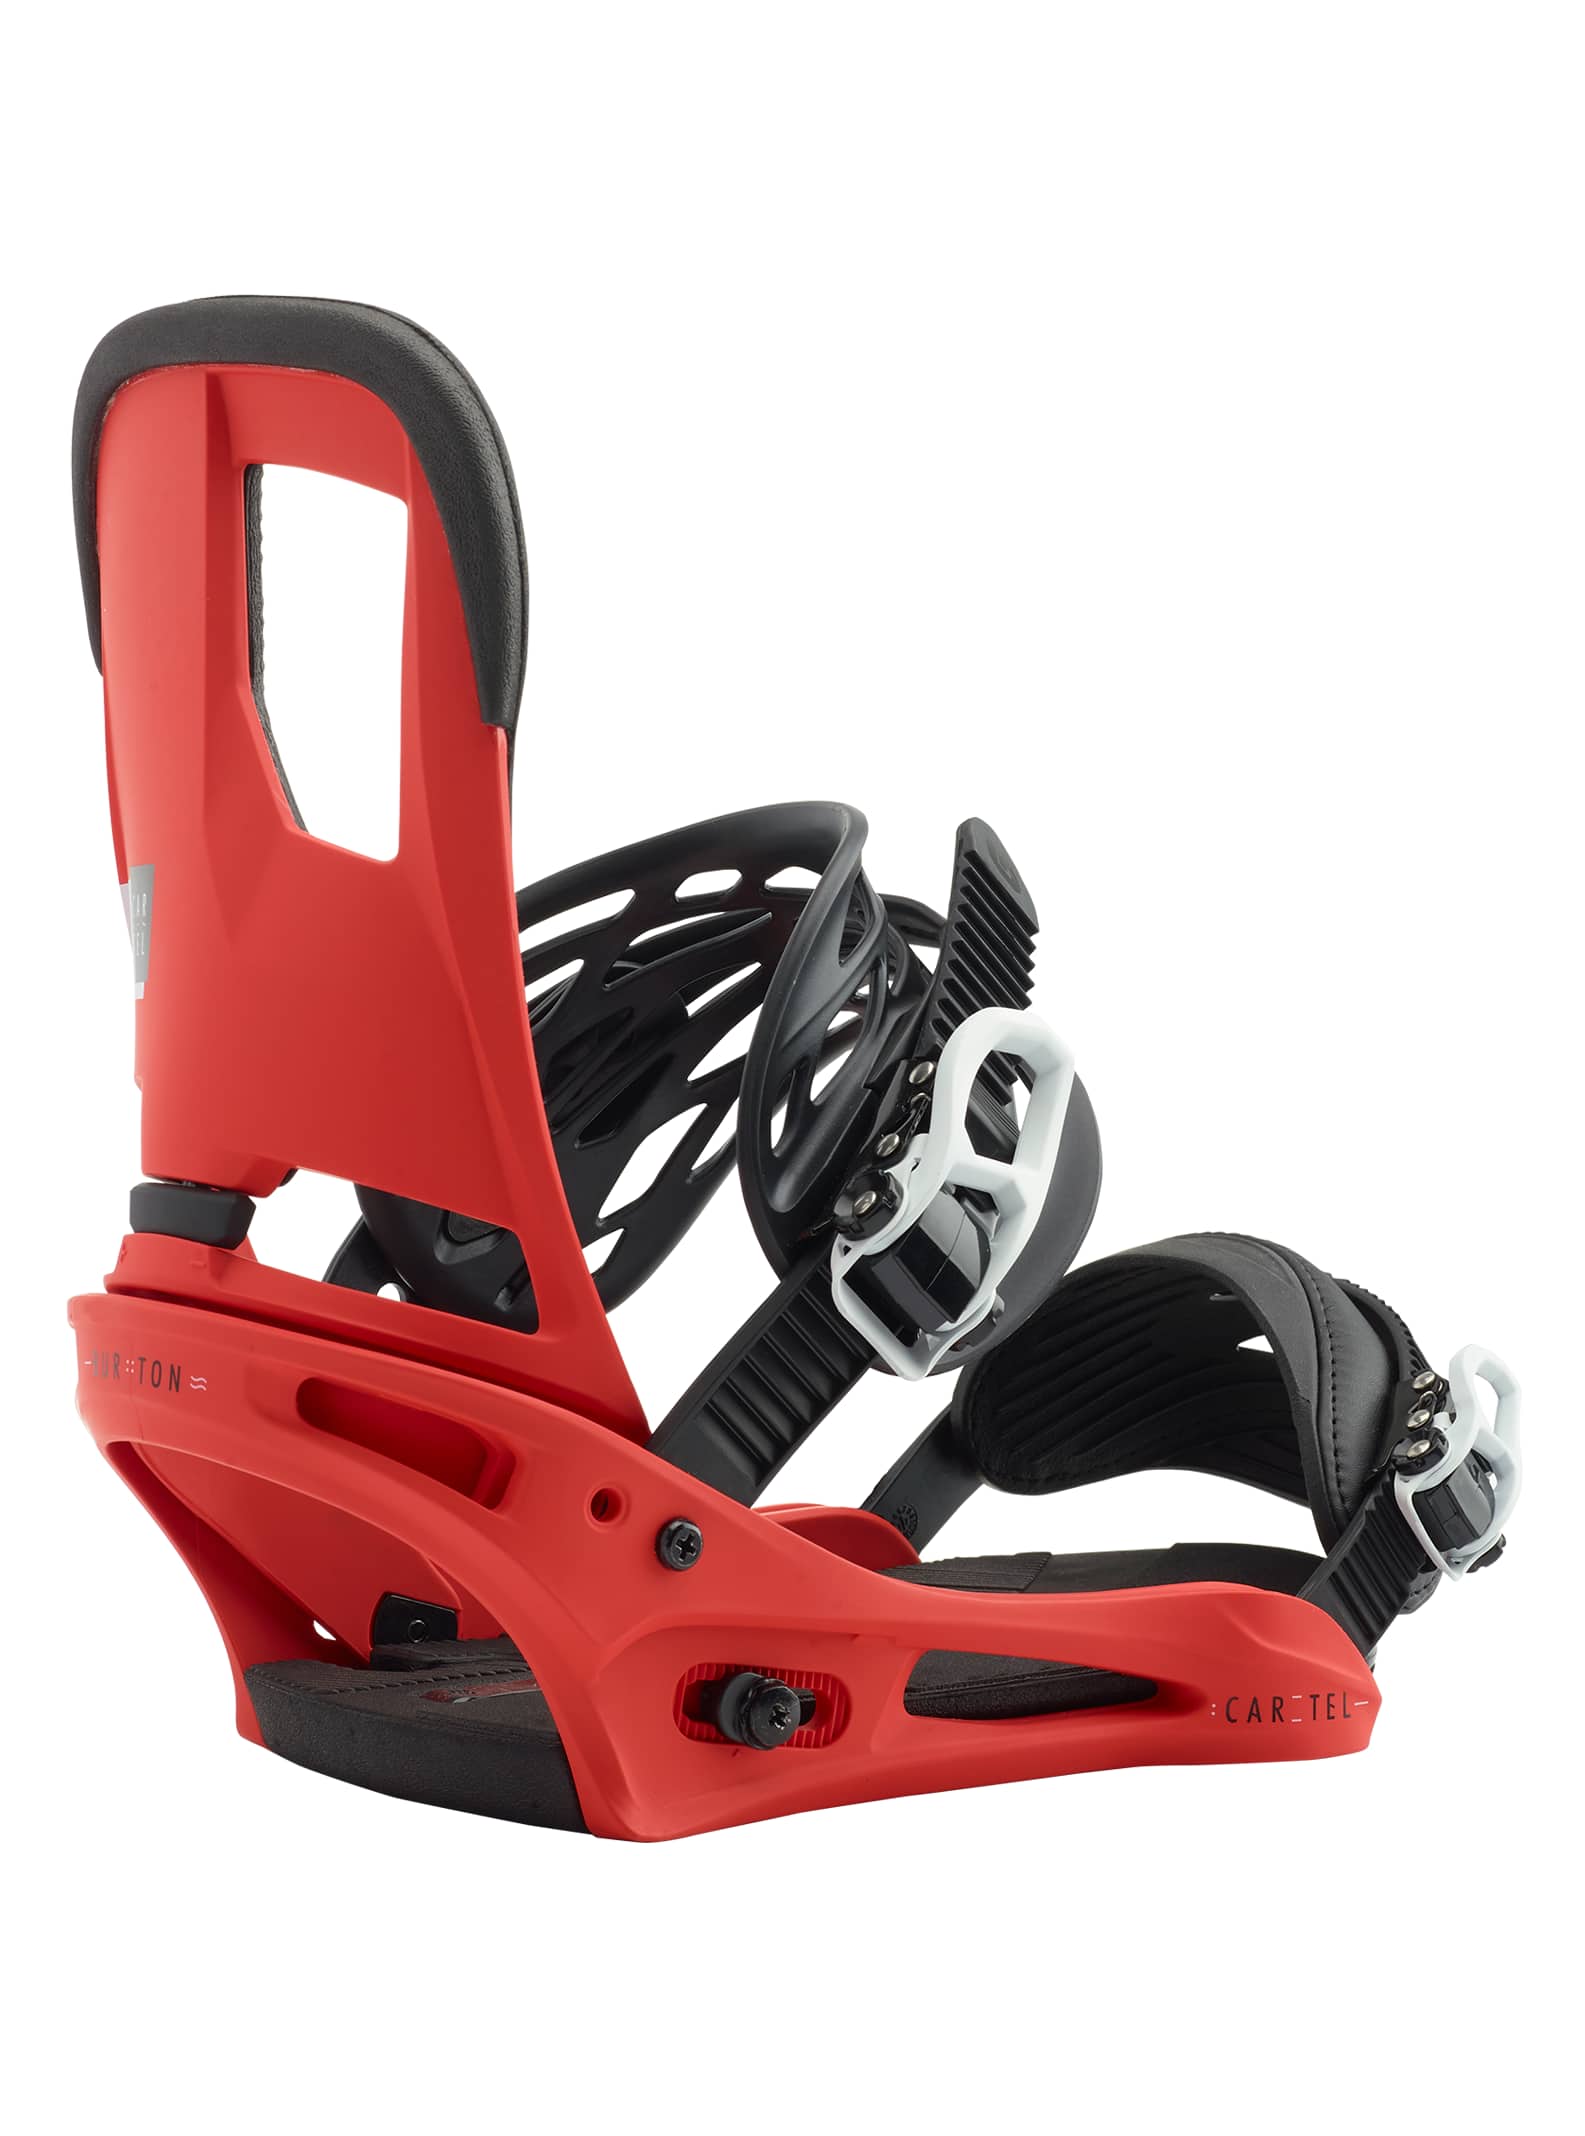 Burton - Fixation pour snowboard Cartel Re:Flex™ homme, Red, L